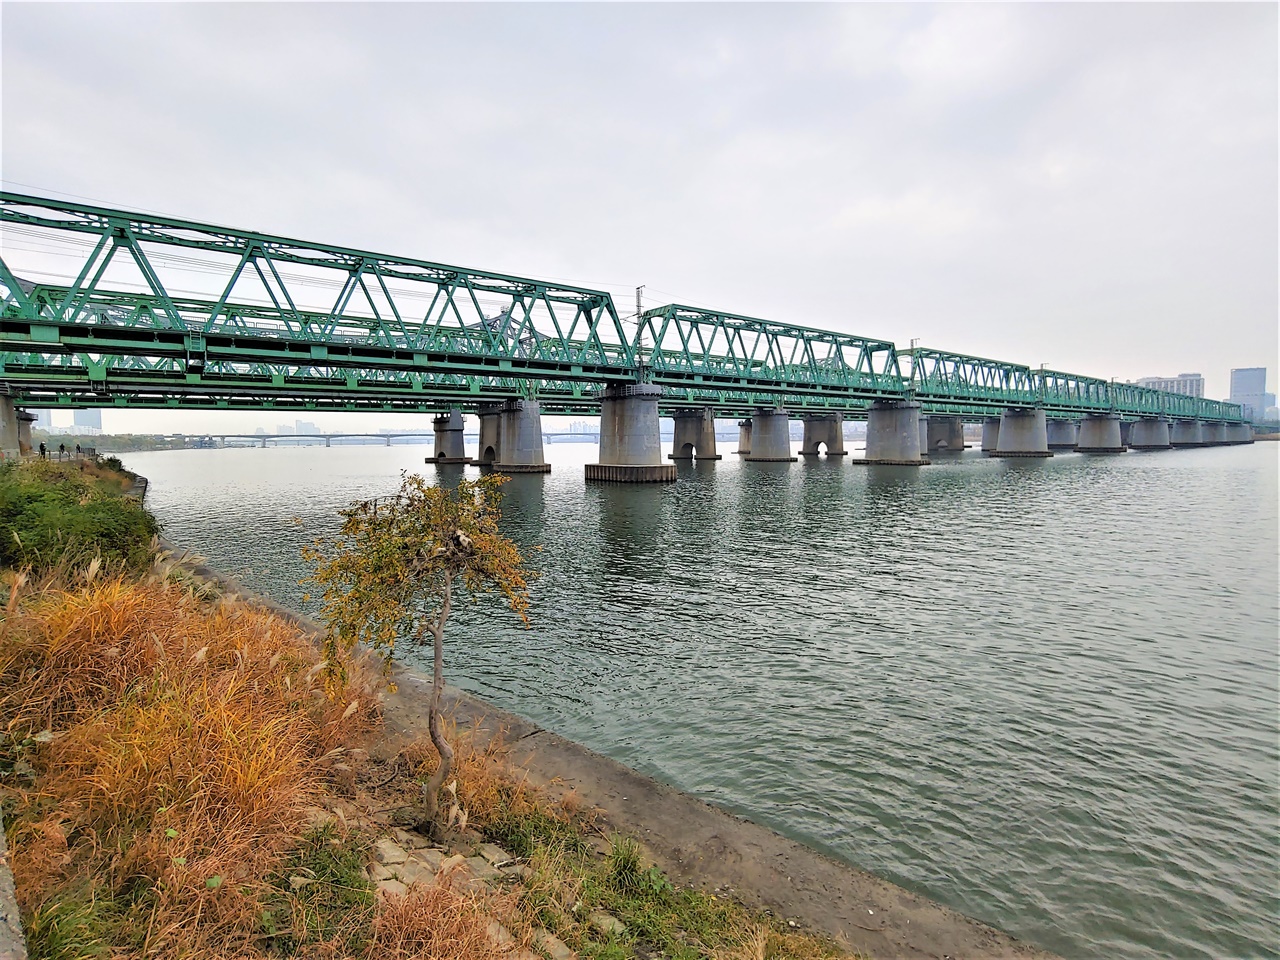 한강철교 모습 총 4개의 트러스교로 이뤄진 한강철교 모습이다. 서울역과 용산역을 지나는 모든 철도가 이 다리를 건너 한강 이남으로 뻗어 나간다. 서럽고 쓰린 우리 근현대사를 오롯하게 껴안고 있는 다리다.